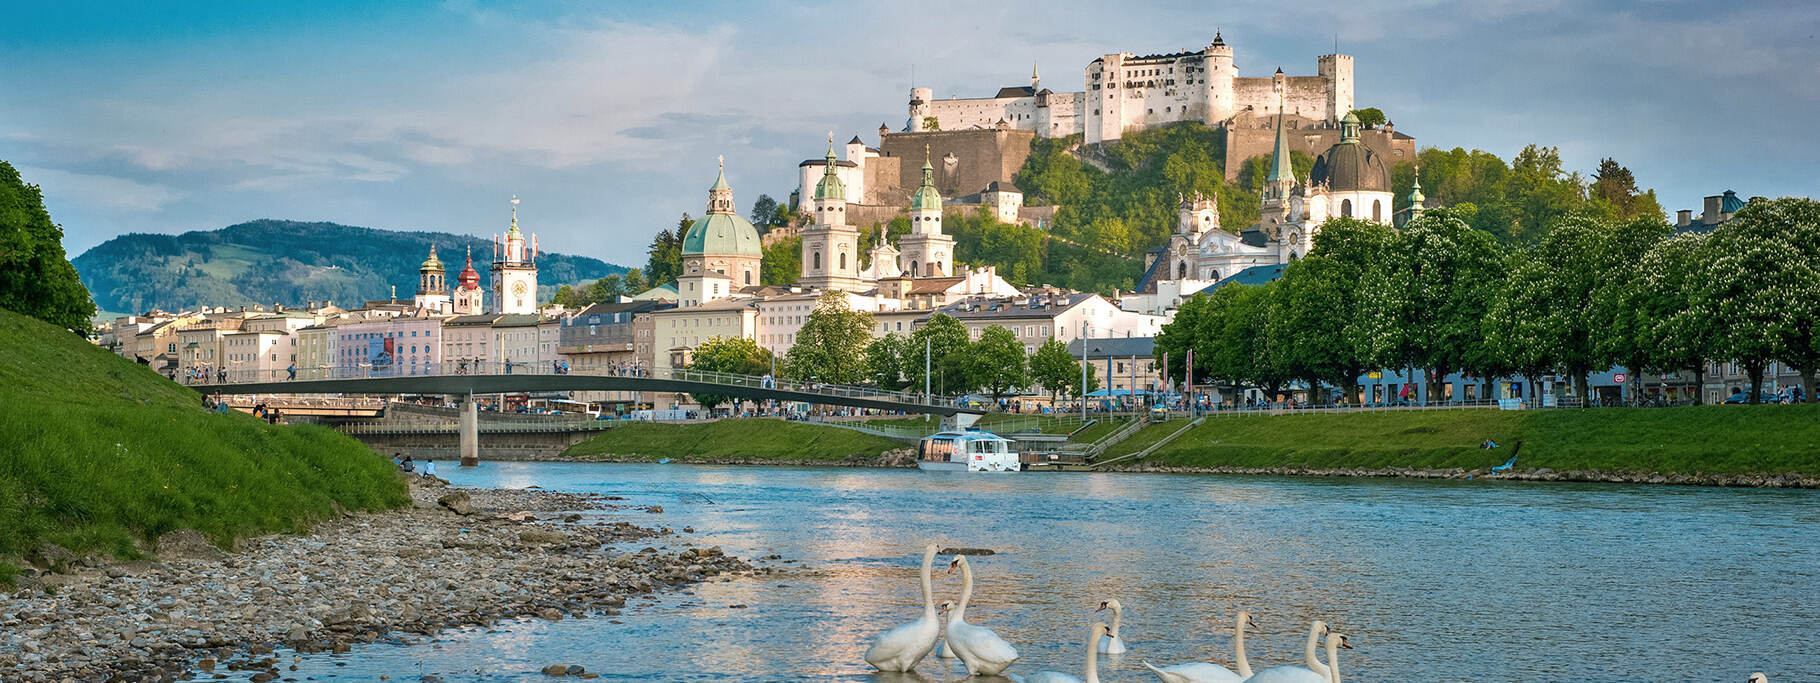 Townscape of Salzburg © Tourismus Salzburg GmbH